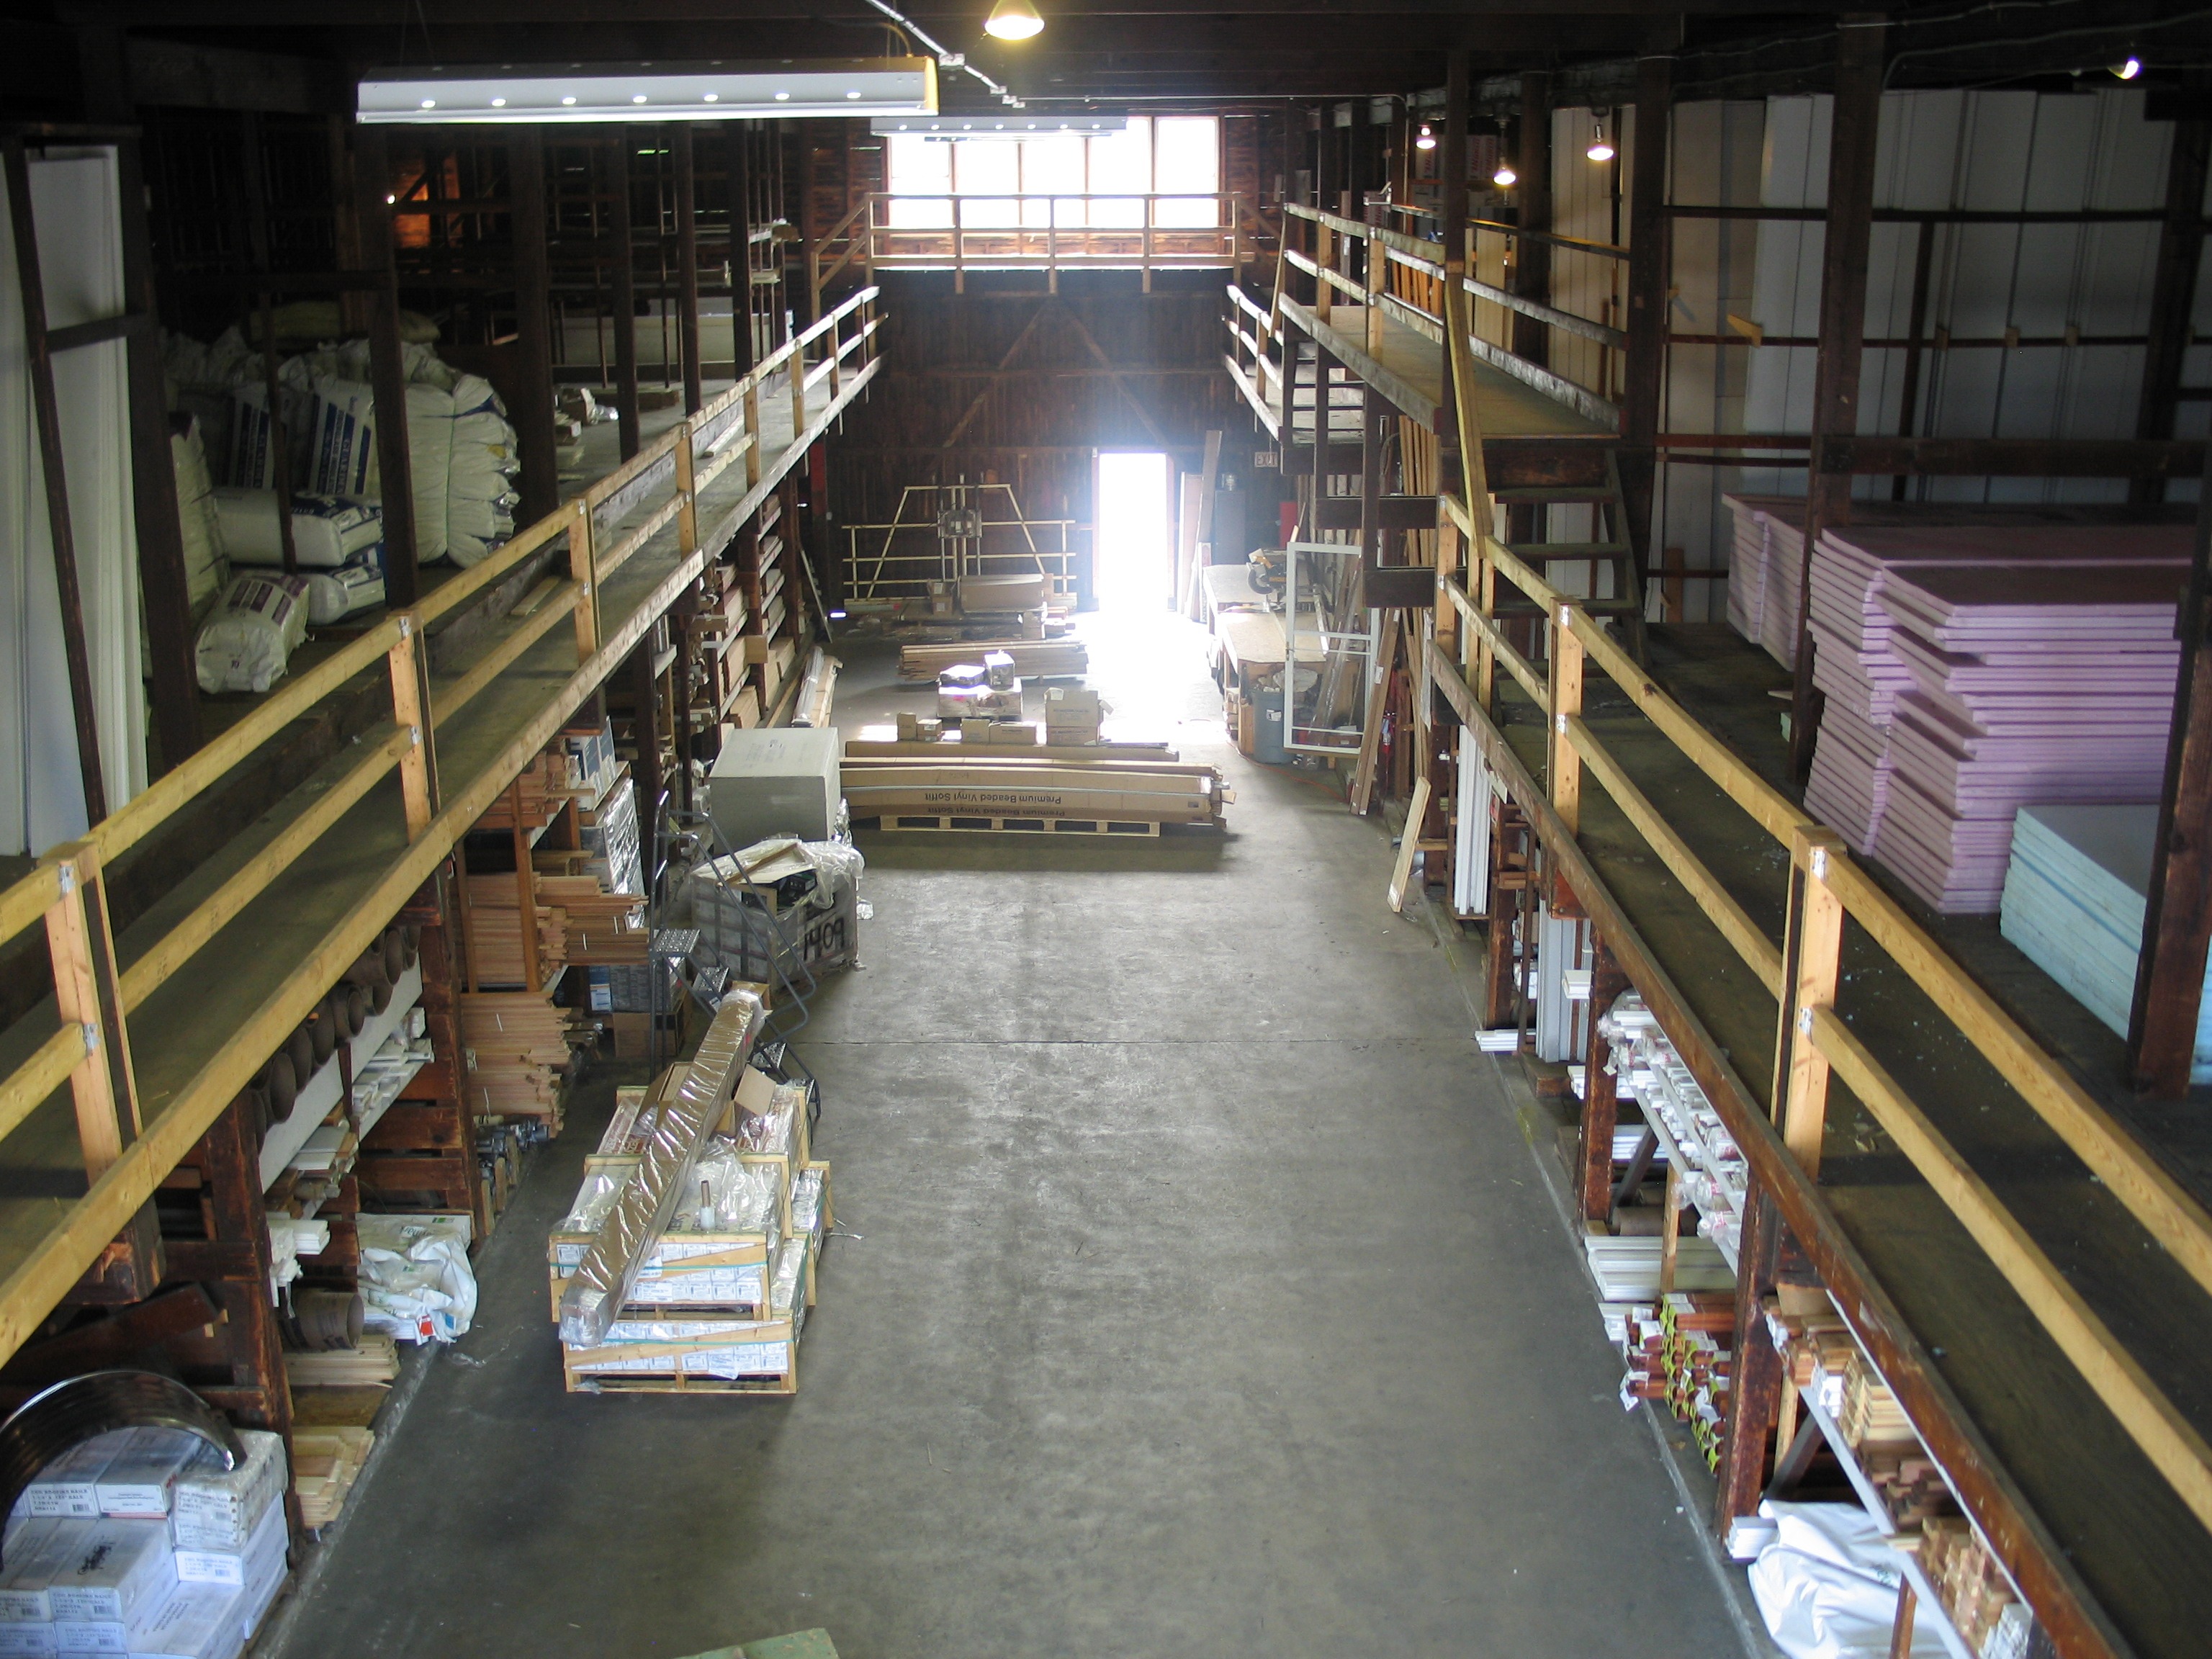 Lumberyard Warehouse Inventory: Insulation and Engineered Wood